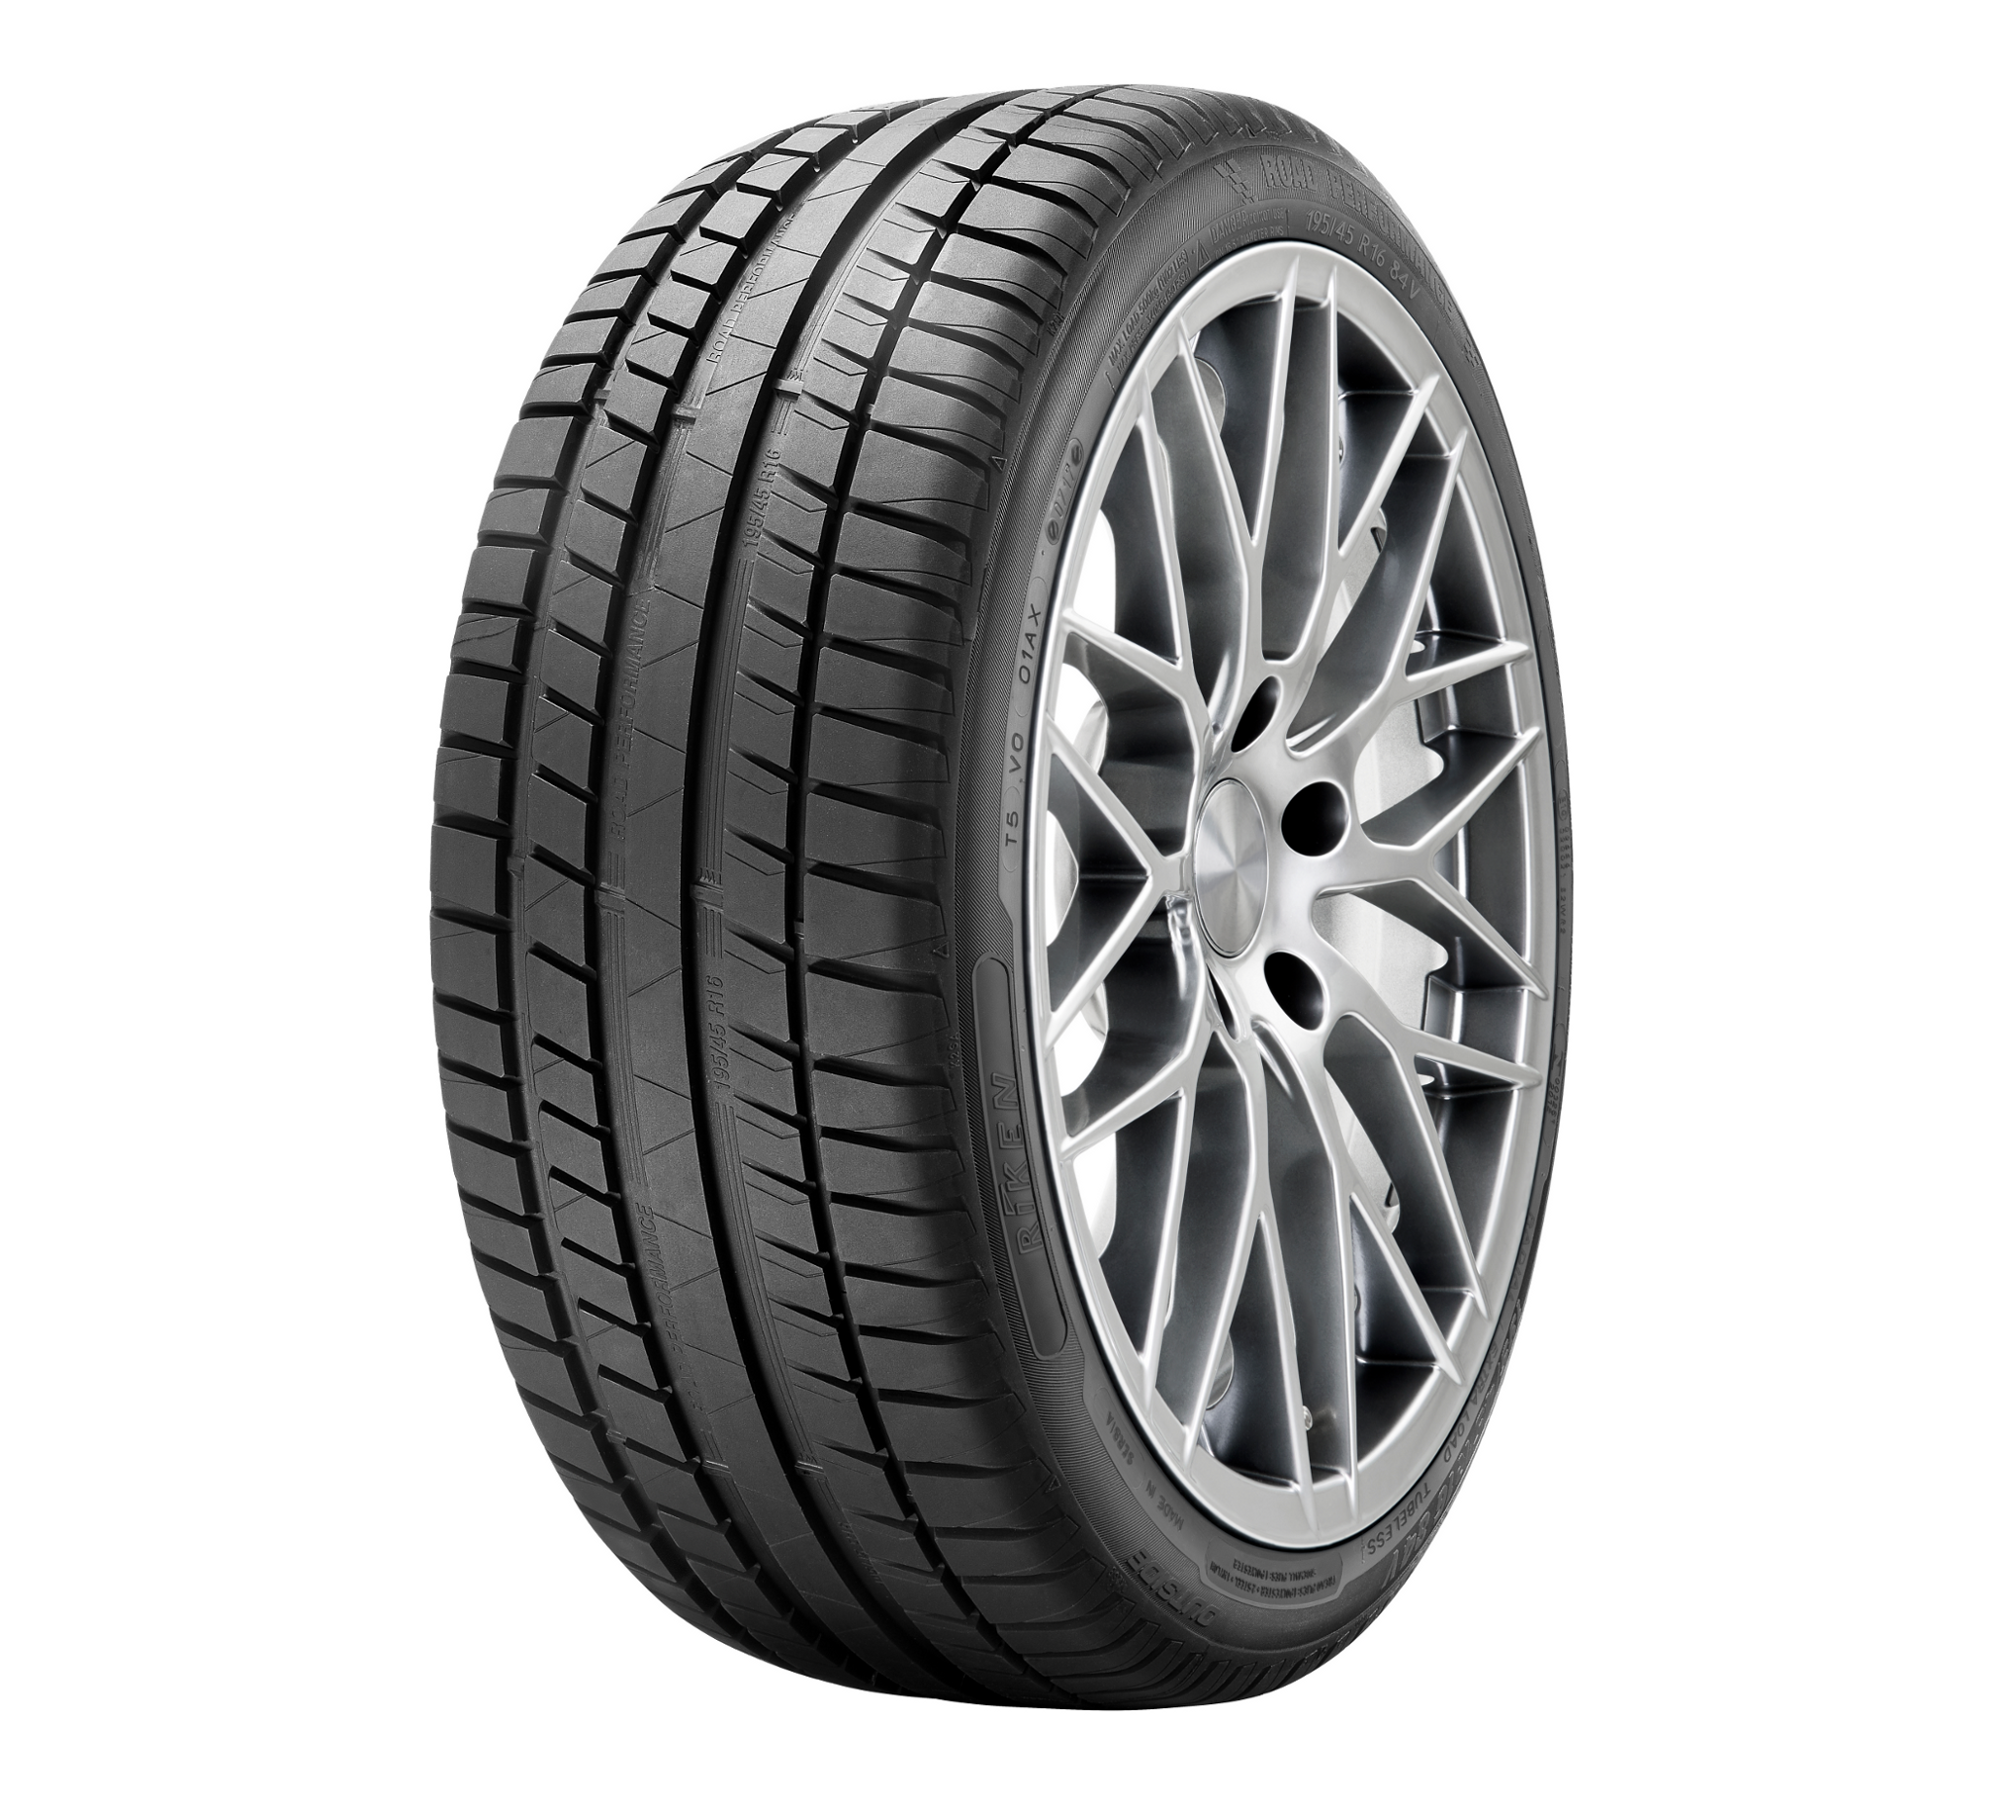 Gomme Nuove Riken 185/55 R15 82H Roadperformance pneumatici nuovi Estivo